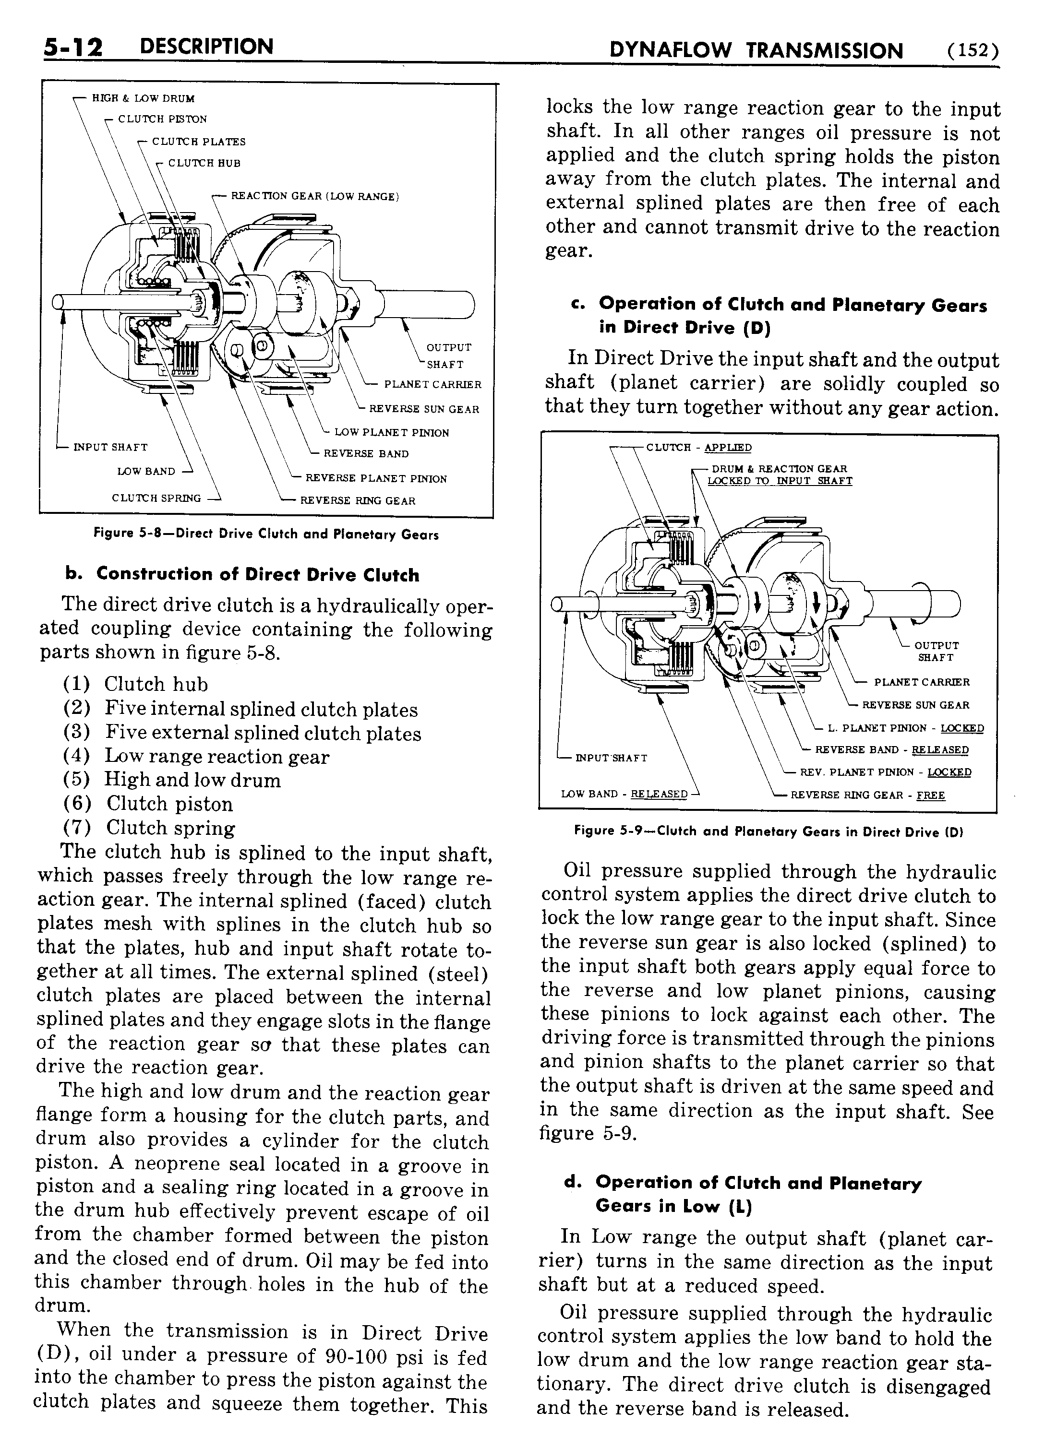 n_06 1955 Buick Shop Manual - Dynaflow-012-012.jpg